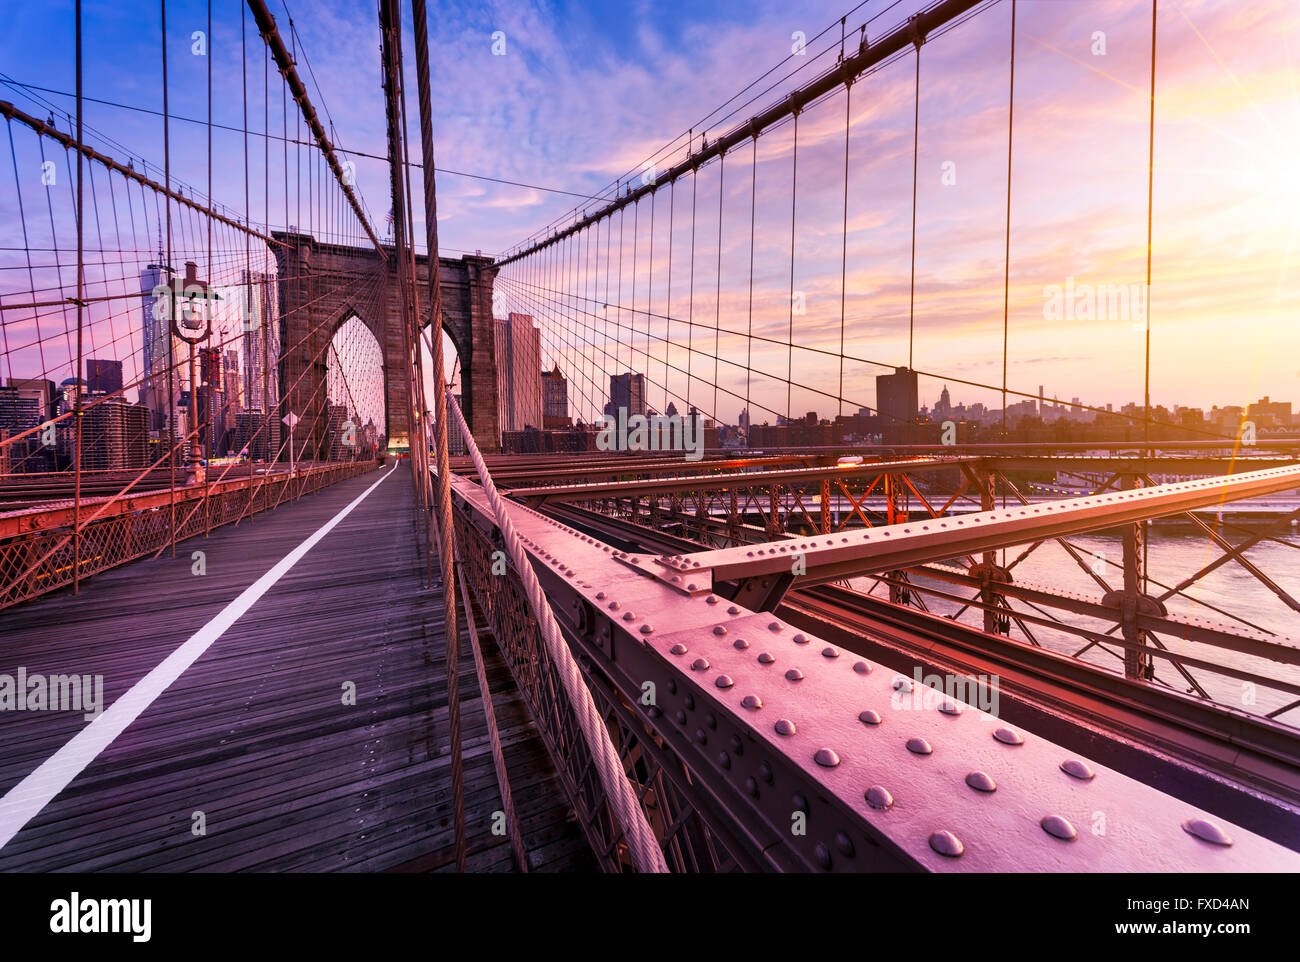 La Ciudad de Nueva York, EE.UU., temprano en la mañana en el famoso Puente de Brooklyn Foto de stock